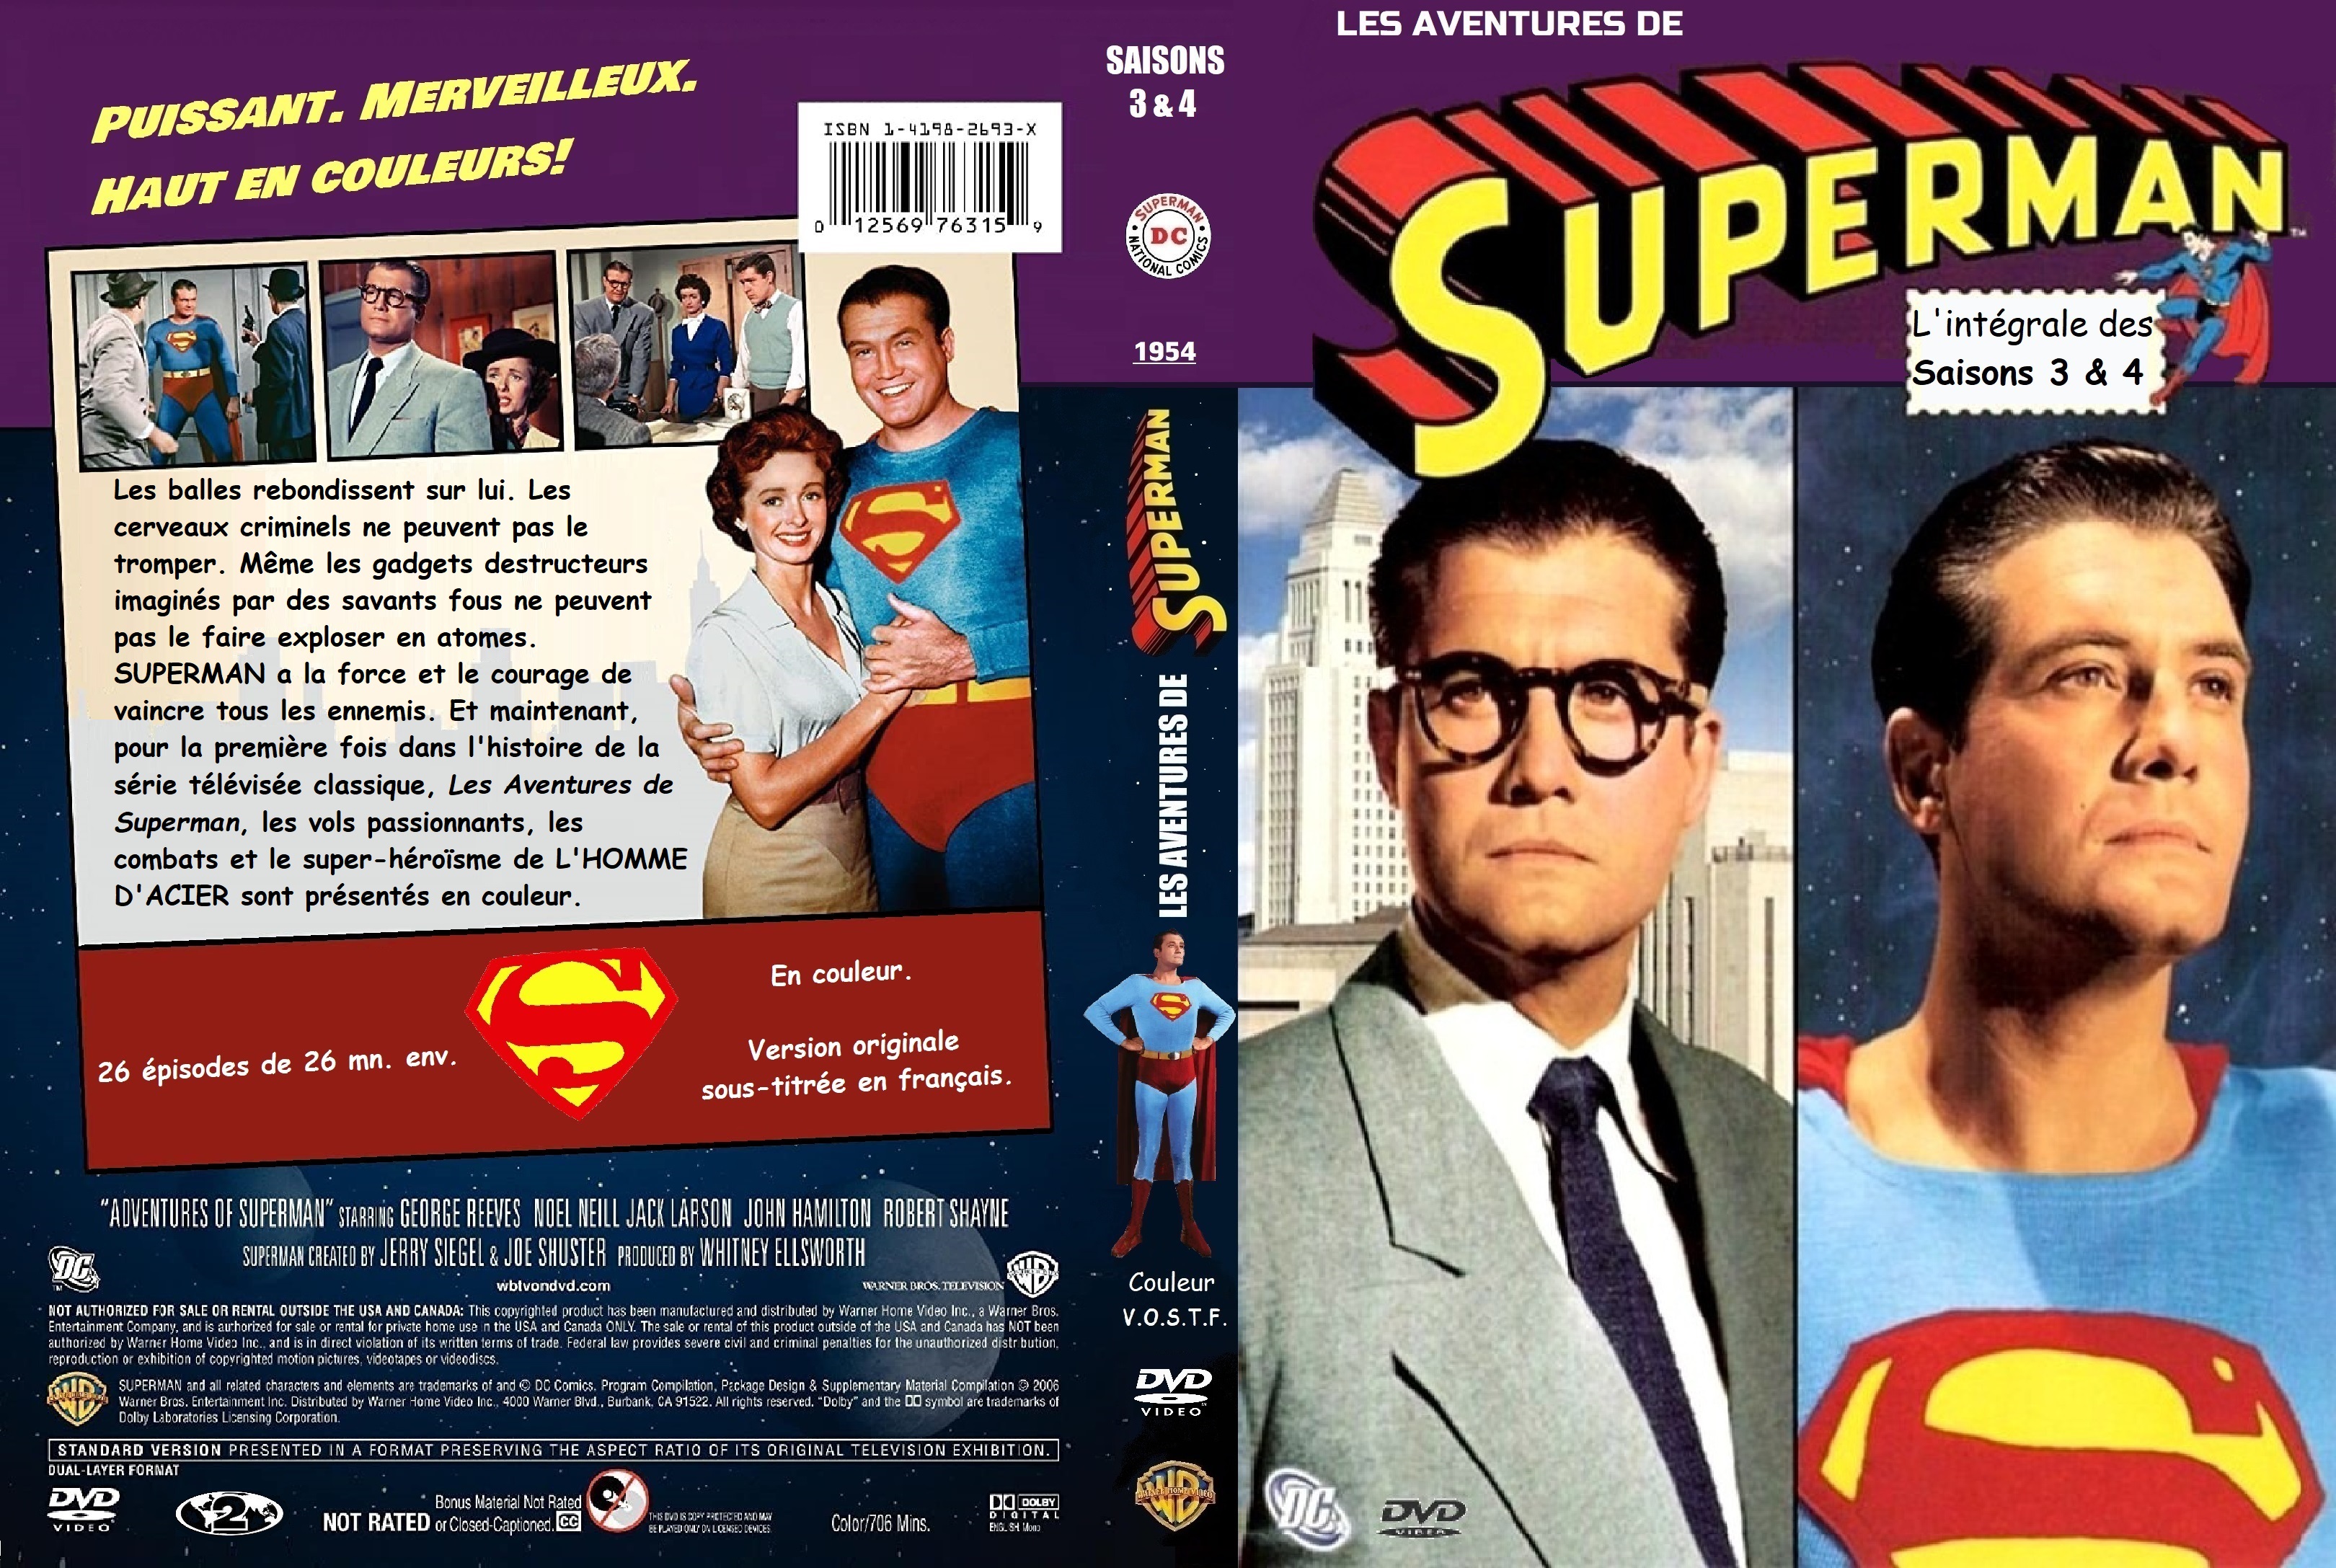 Jaquette DVD Les aventures de Superman saisons 3 & 4(1954) custom